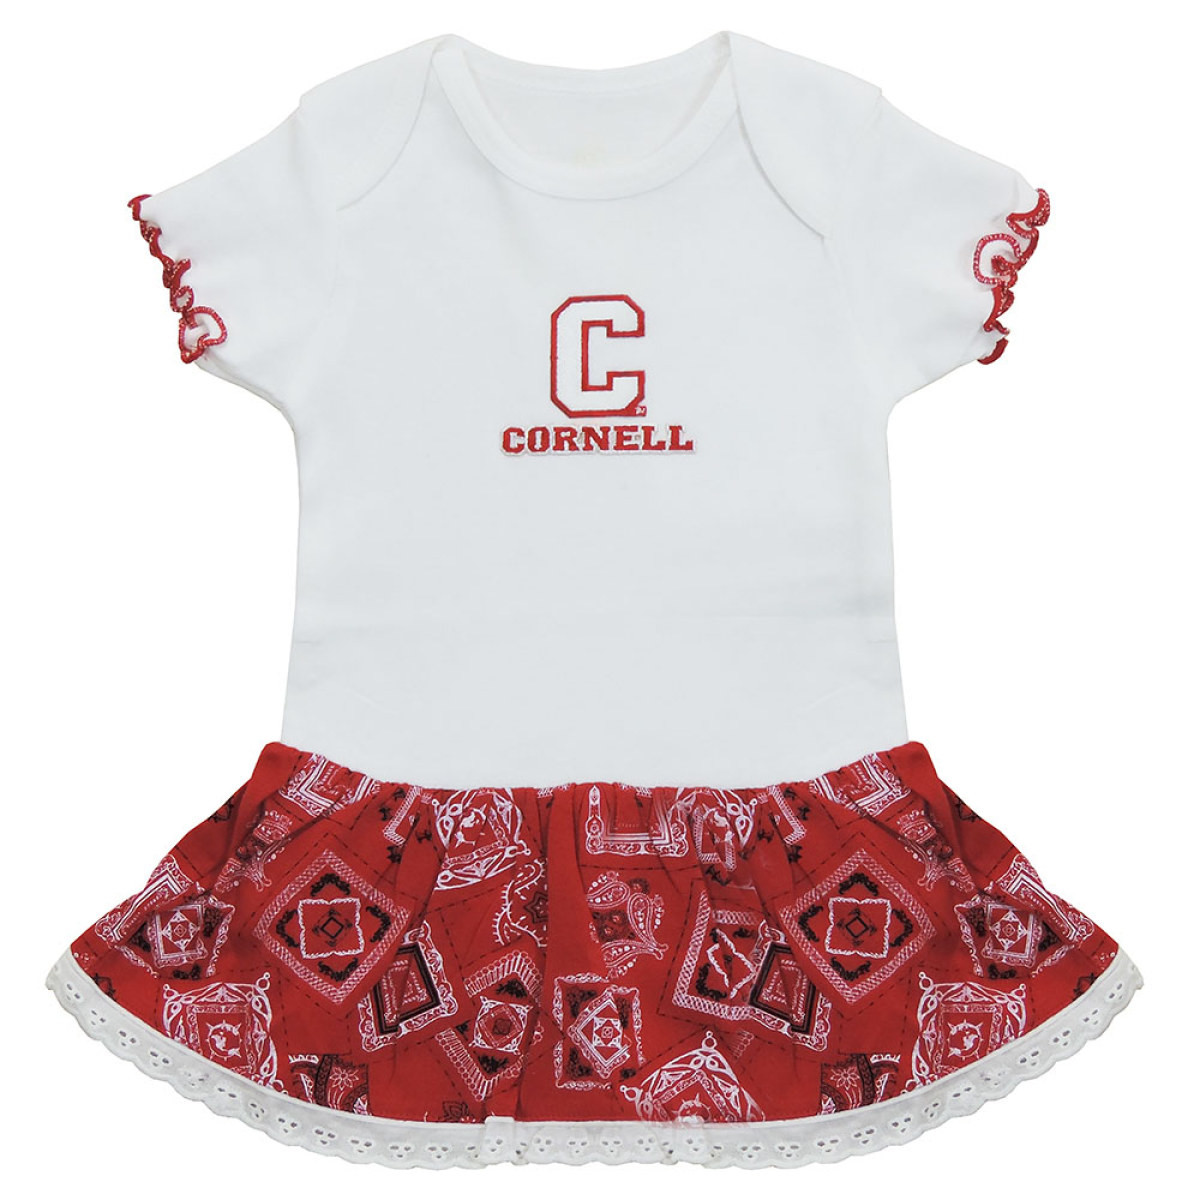 Altijd restjes Verhandeling Cornell Infant Bandana Dress | Bear Necessities Online Store